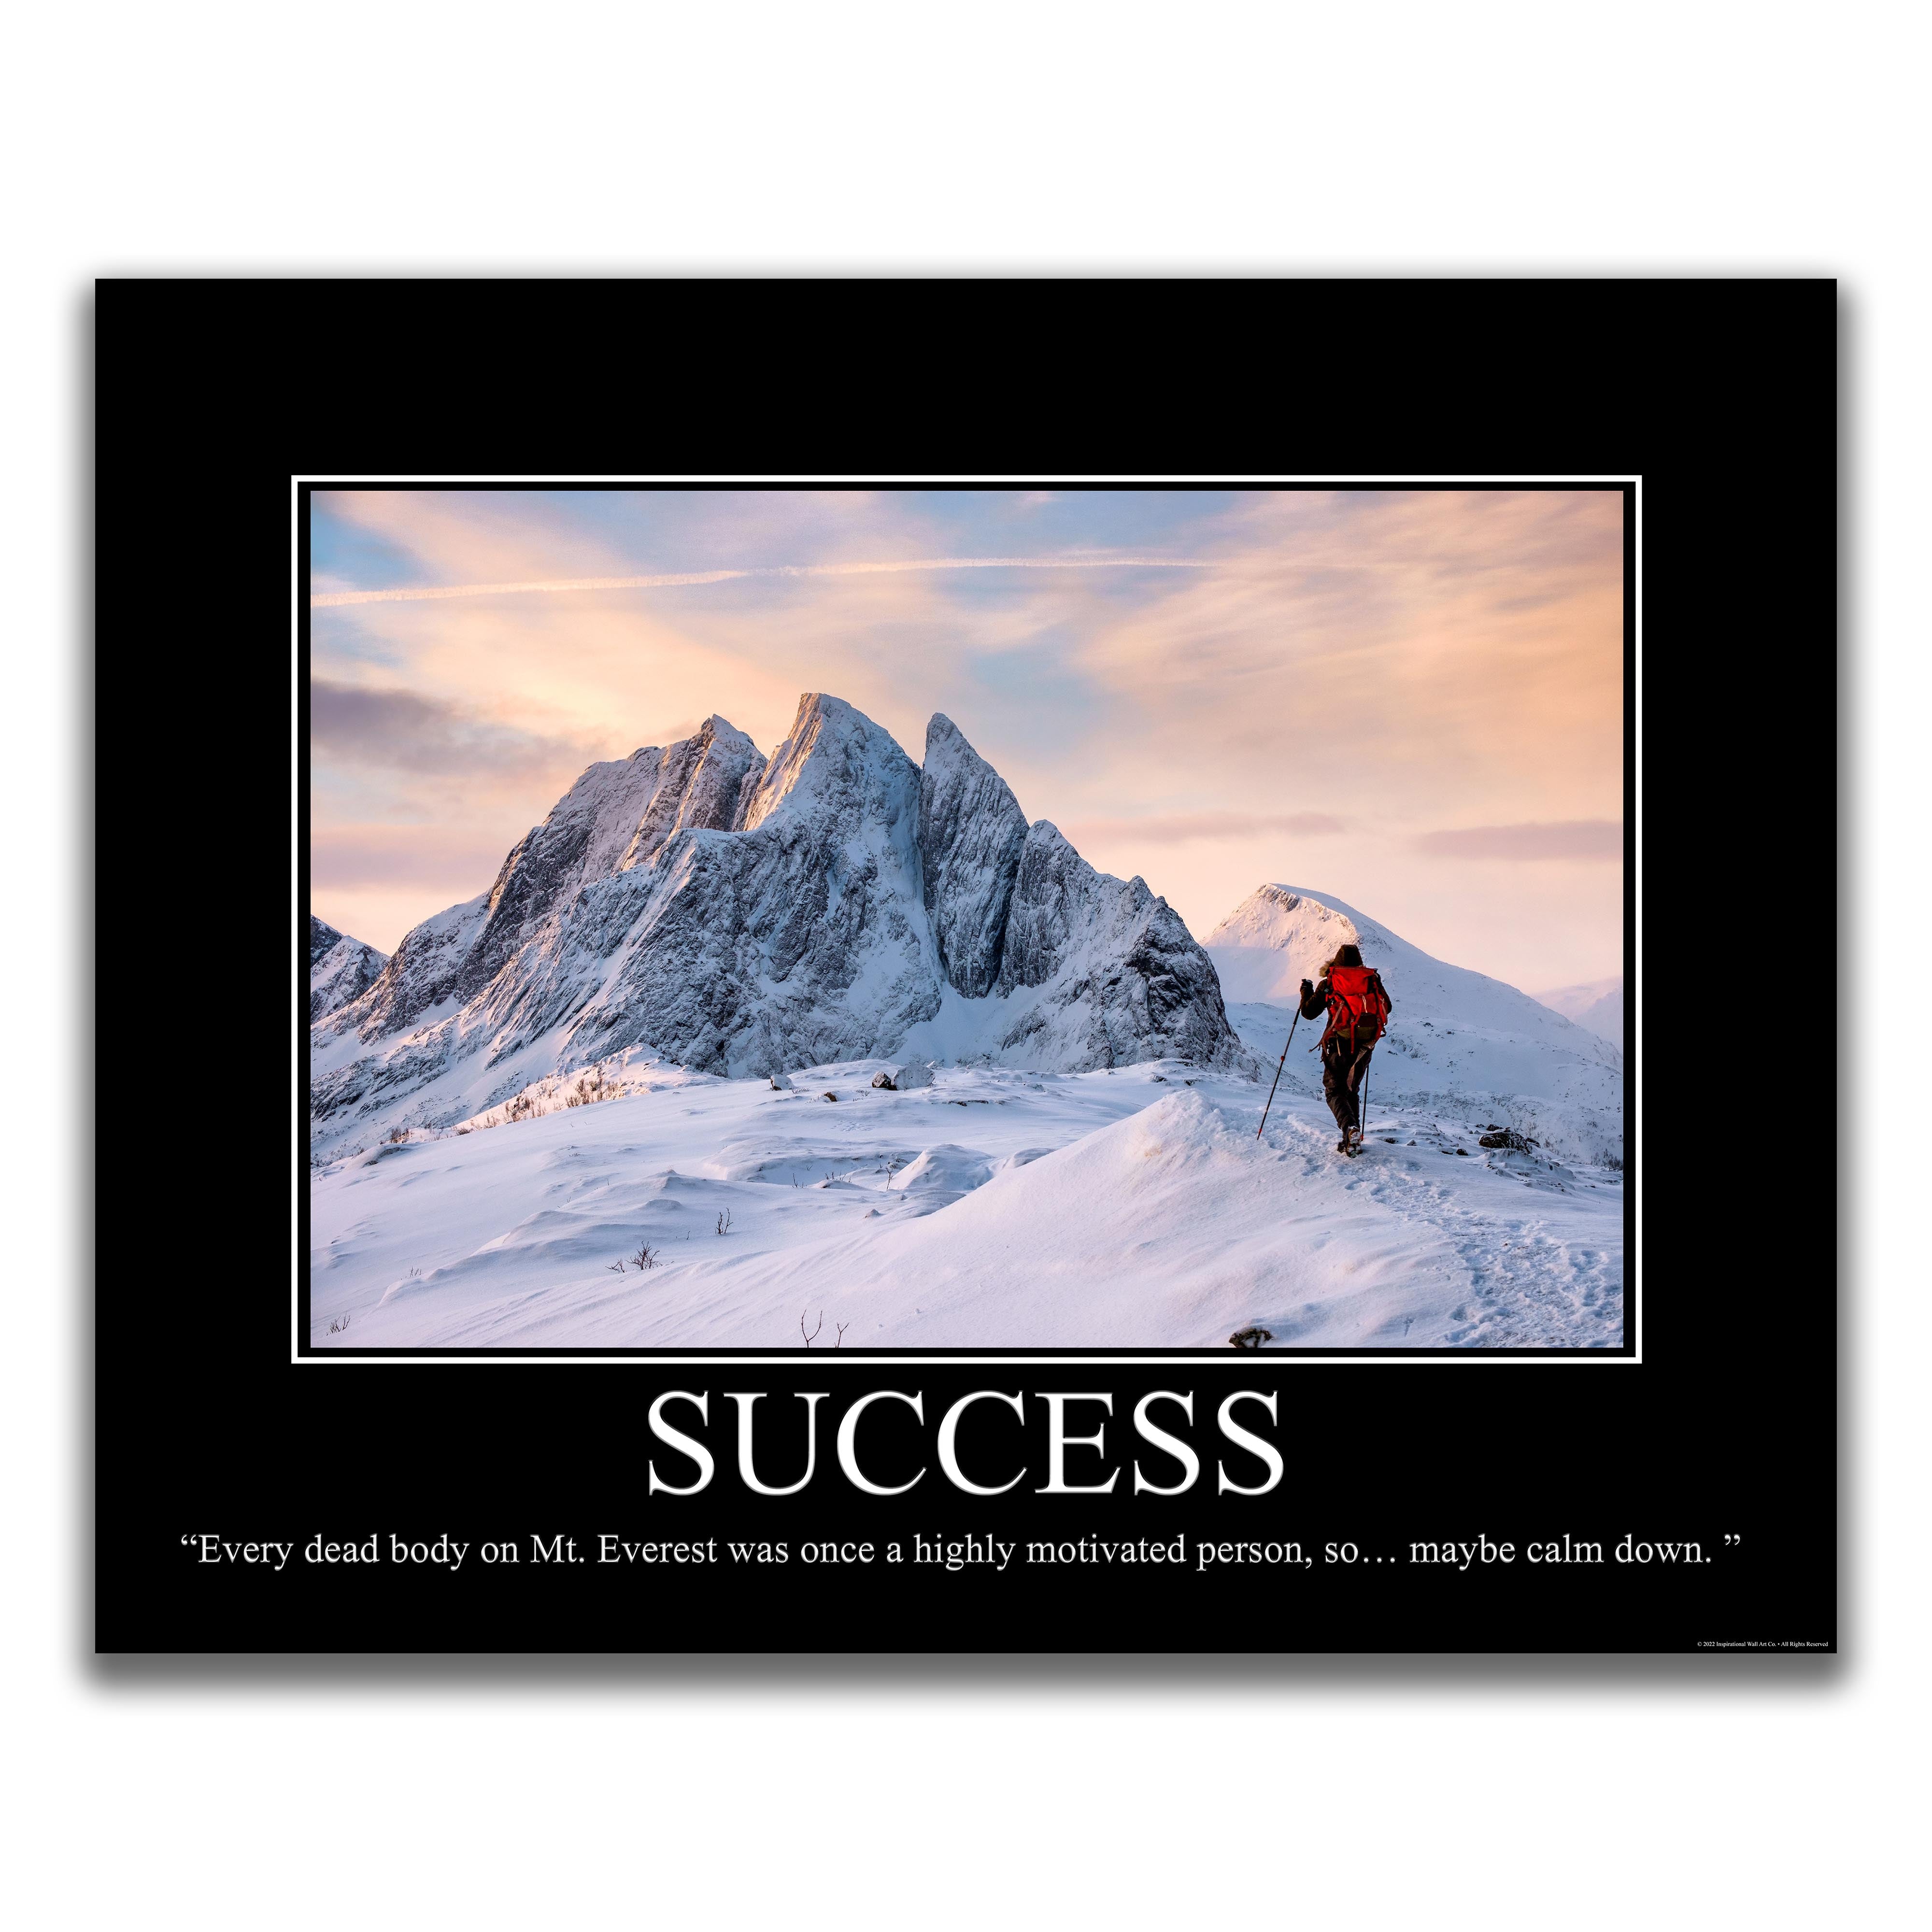 Success - Demotivational Poster